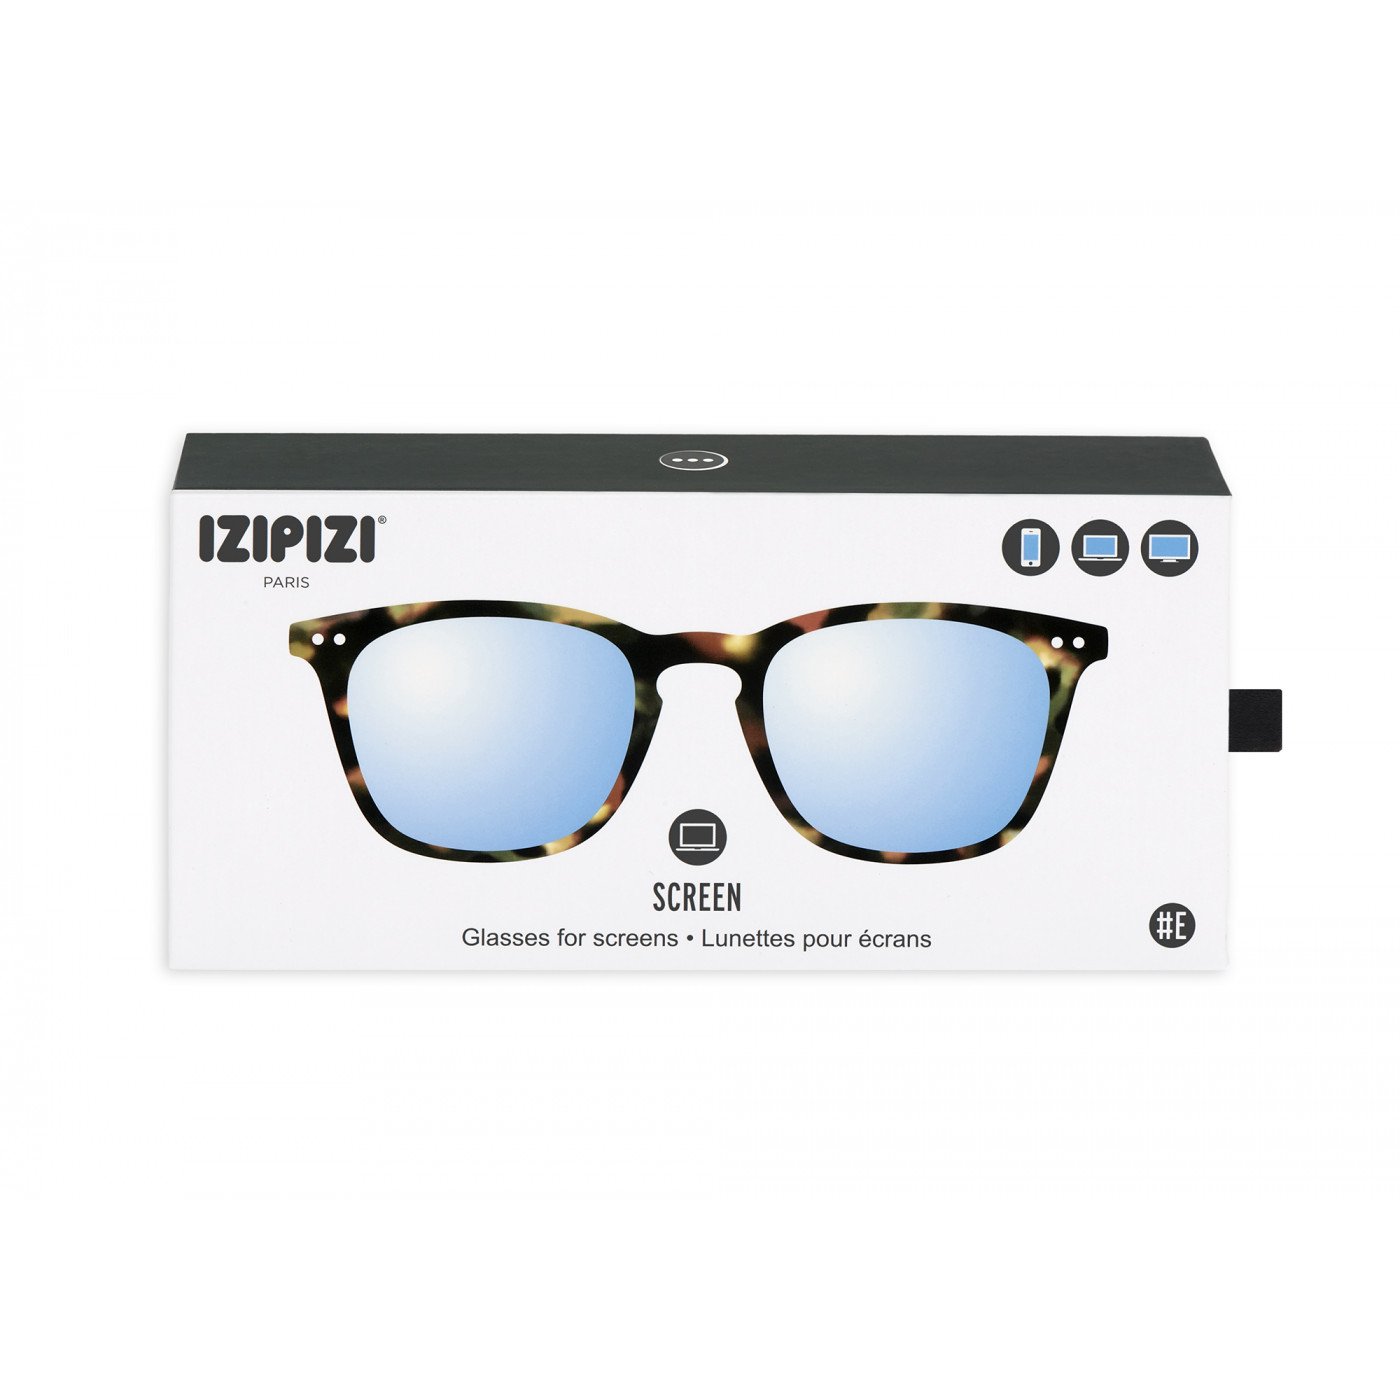 IZIPIZI #E Tortoise Soft +0,00 Screen Glasses